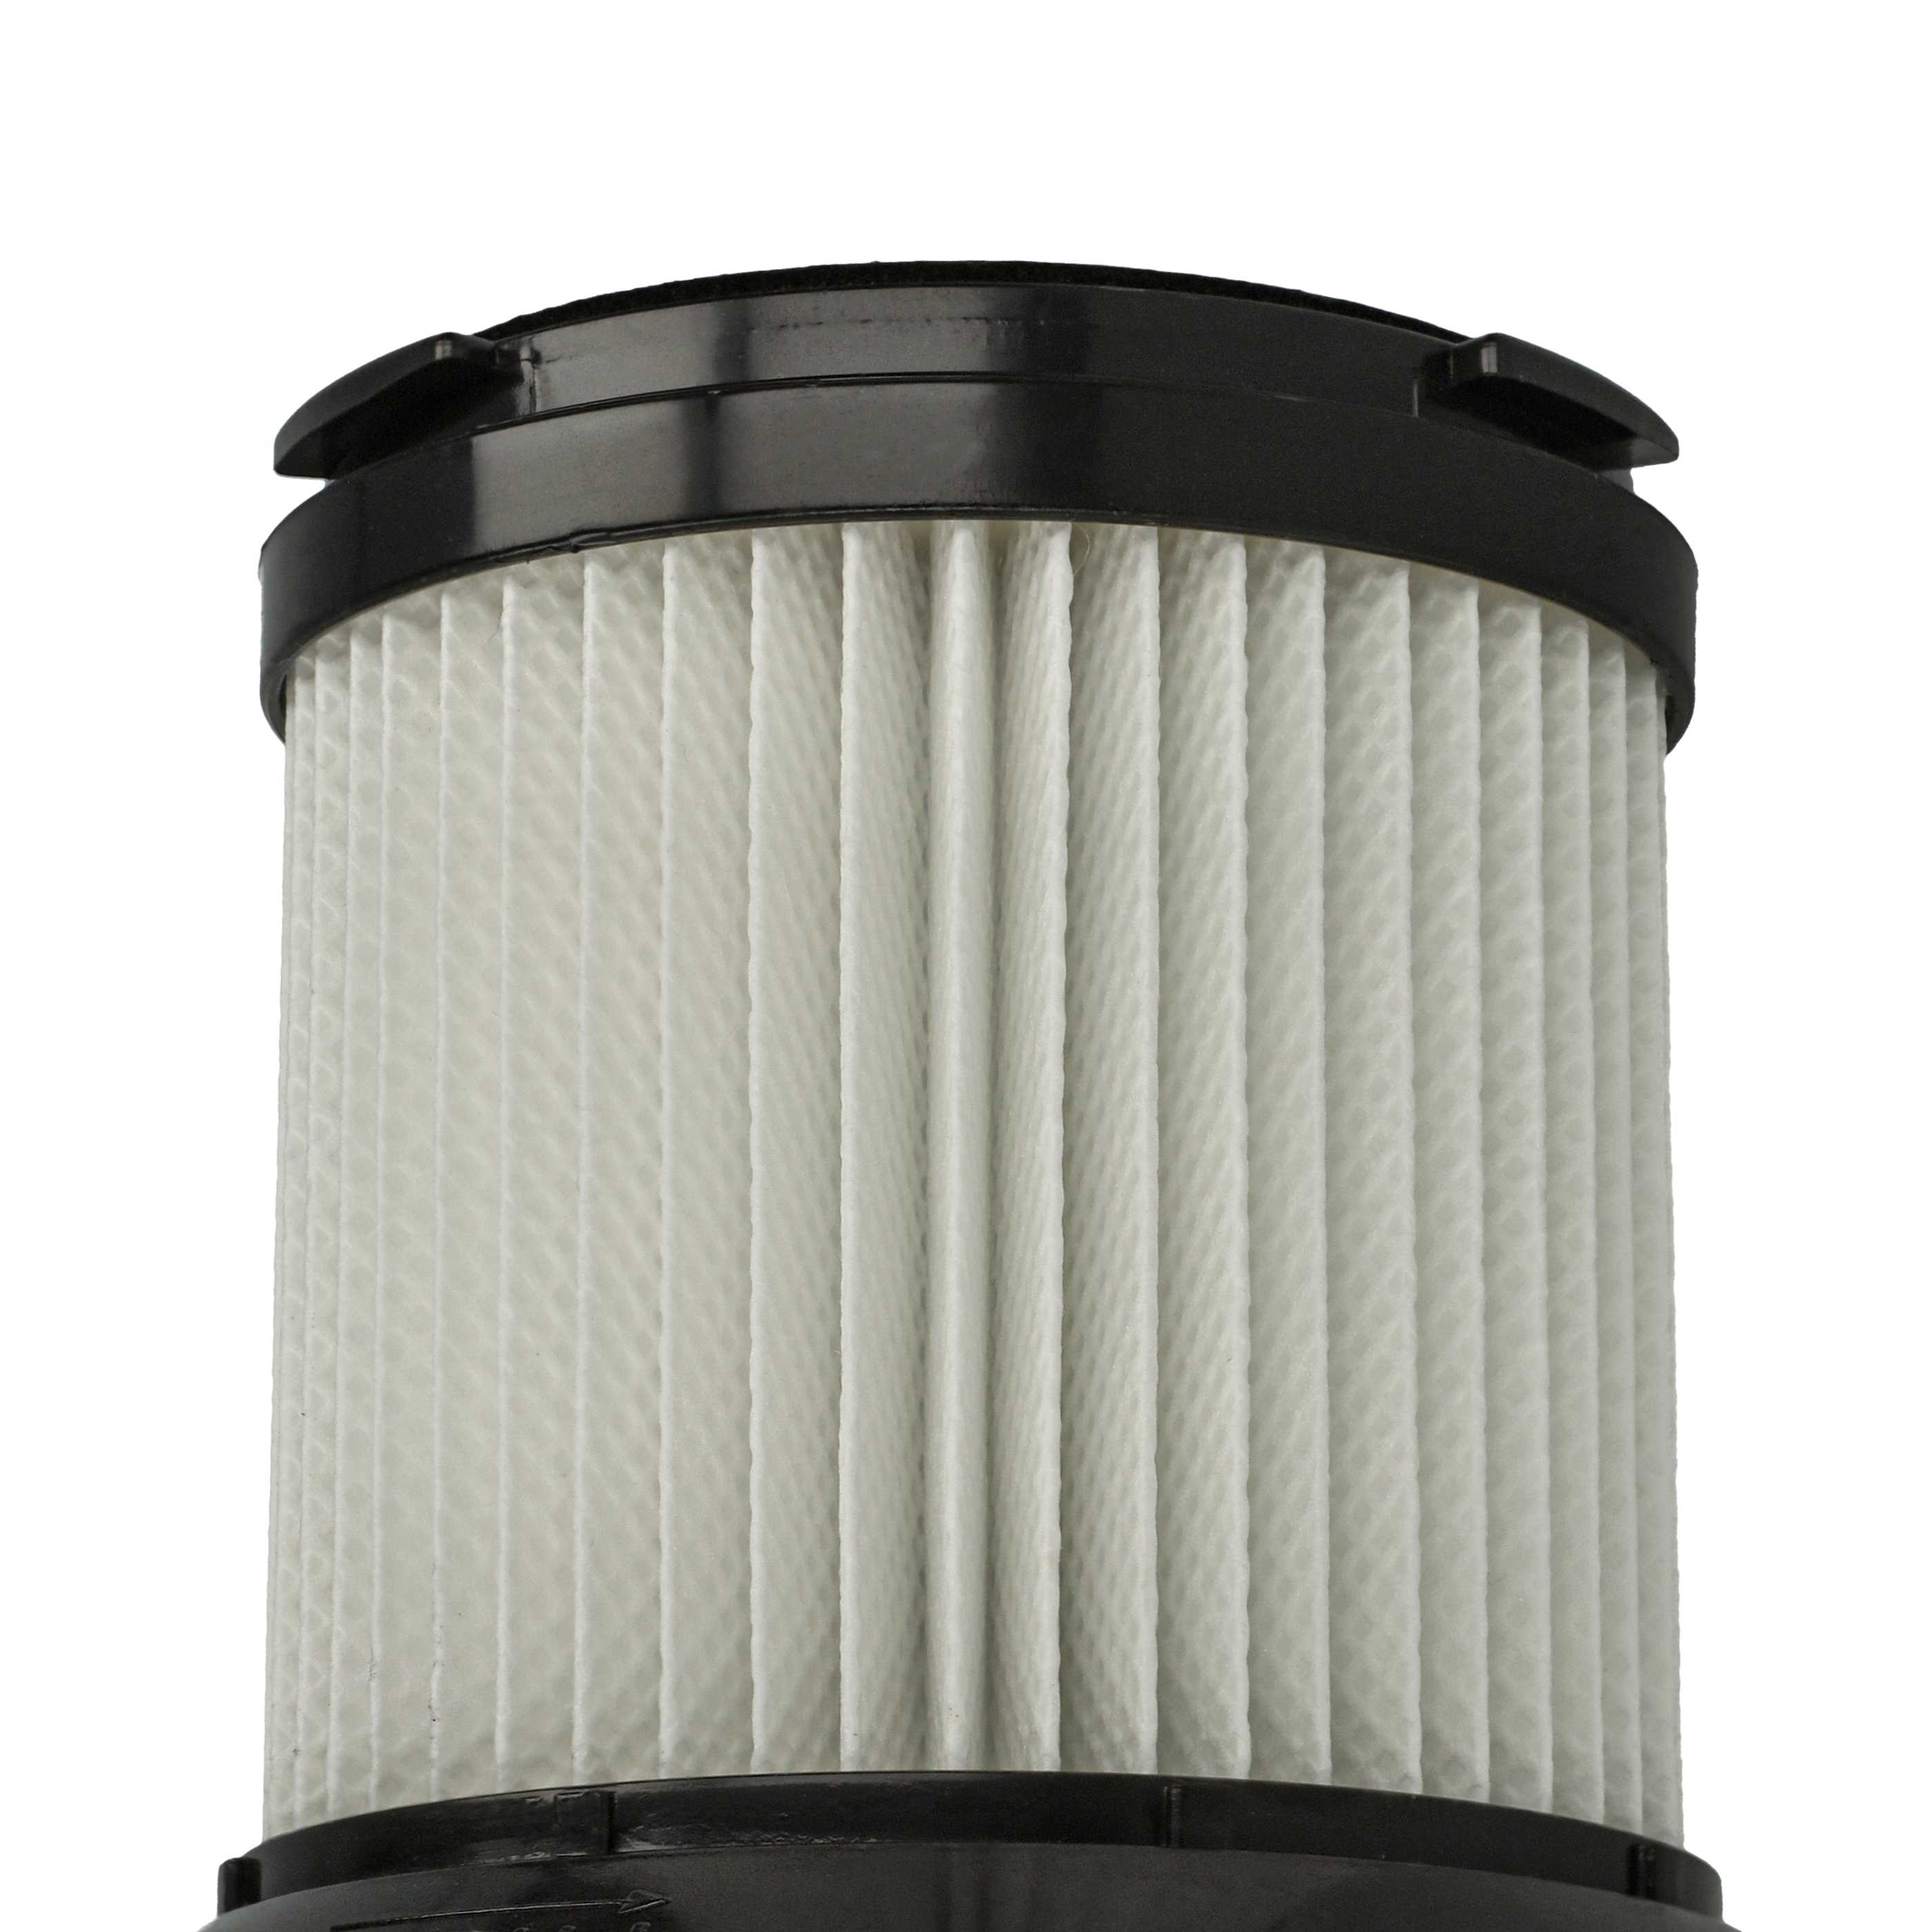 2x Filtres pour aspirateur Sichler Zyklon BLS-200 - filtre HEPA